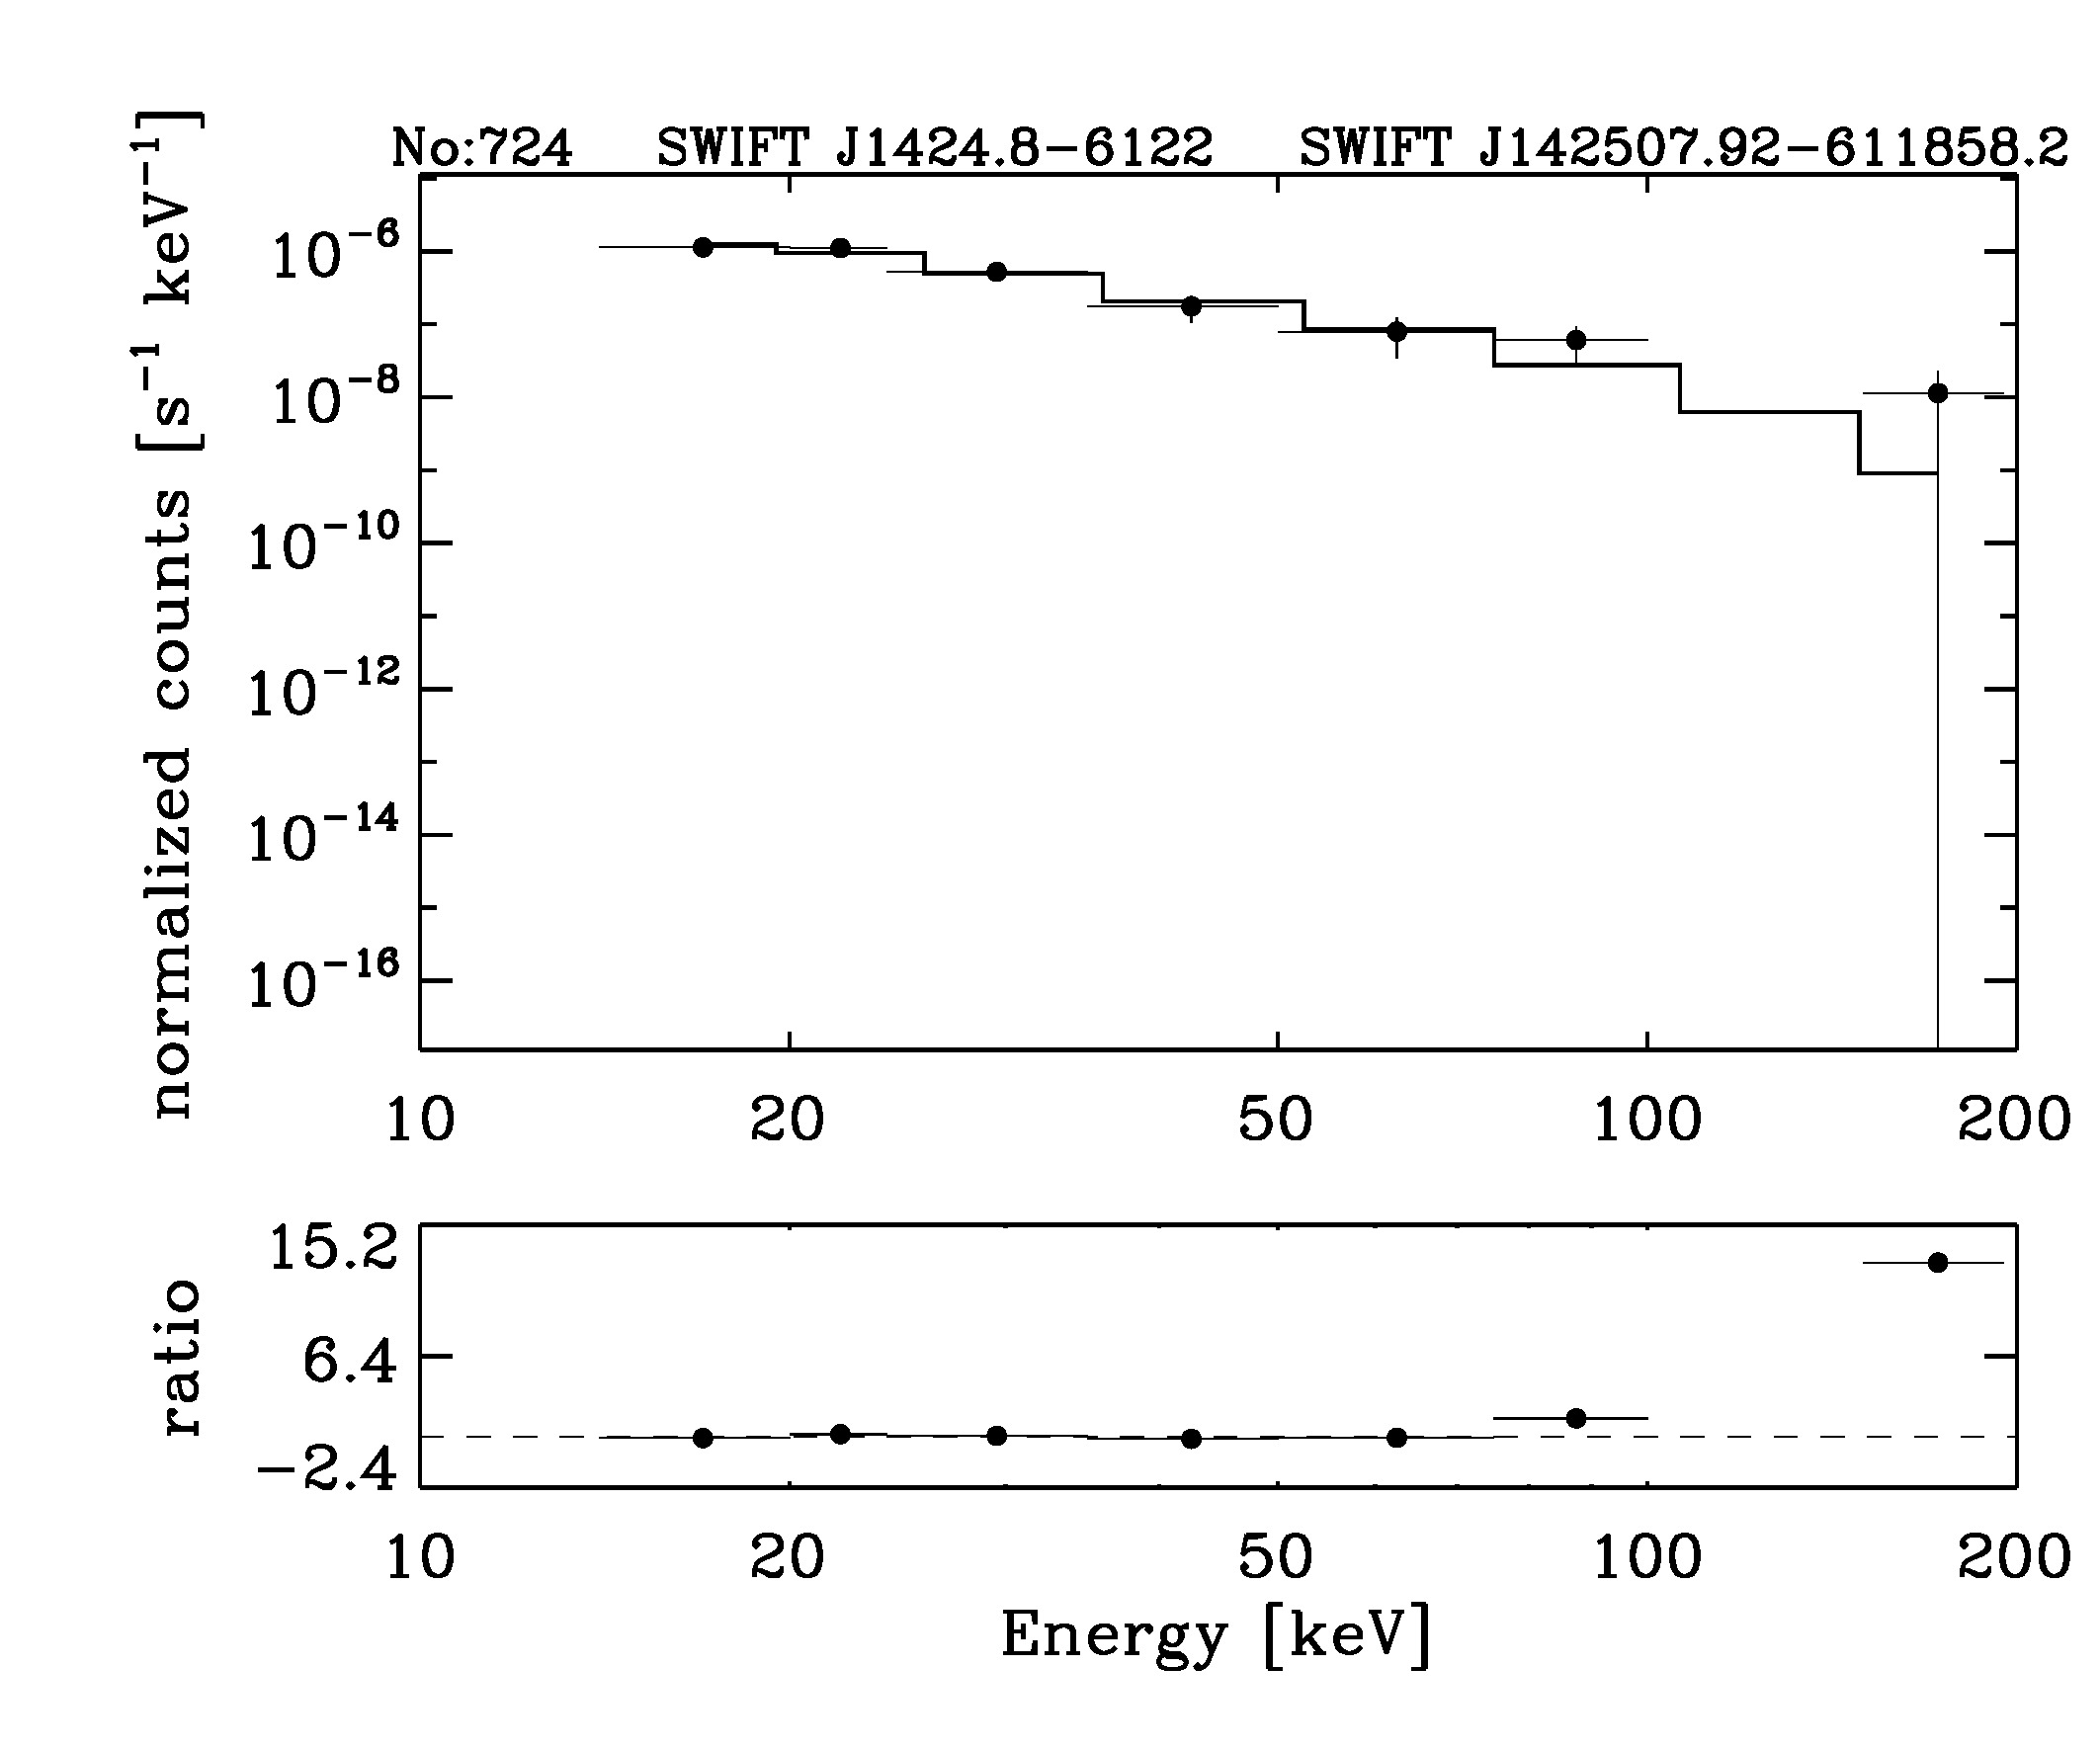 BAT Spectrum for SWIFT J1424.8-6122